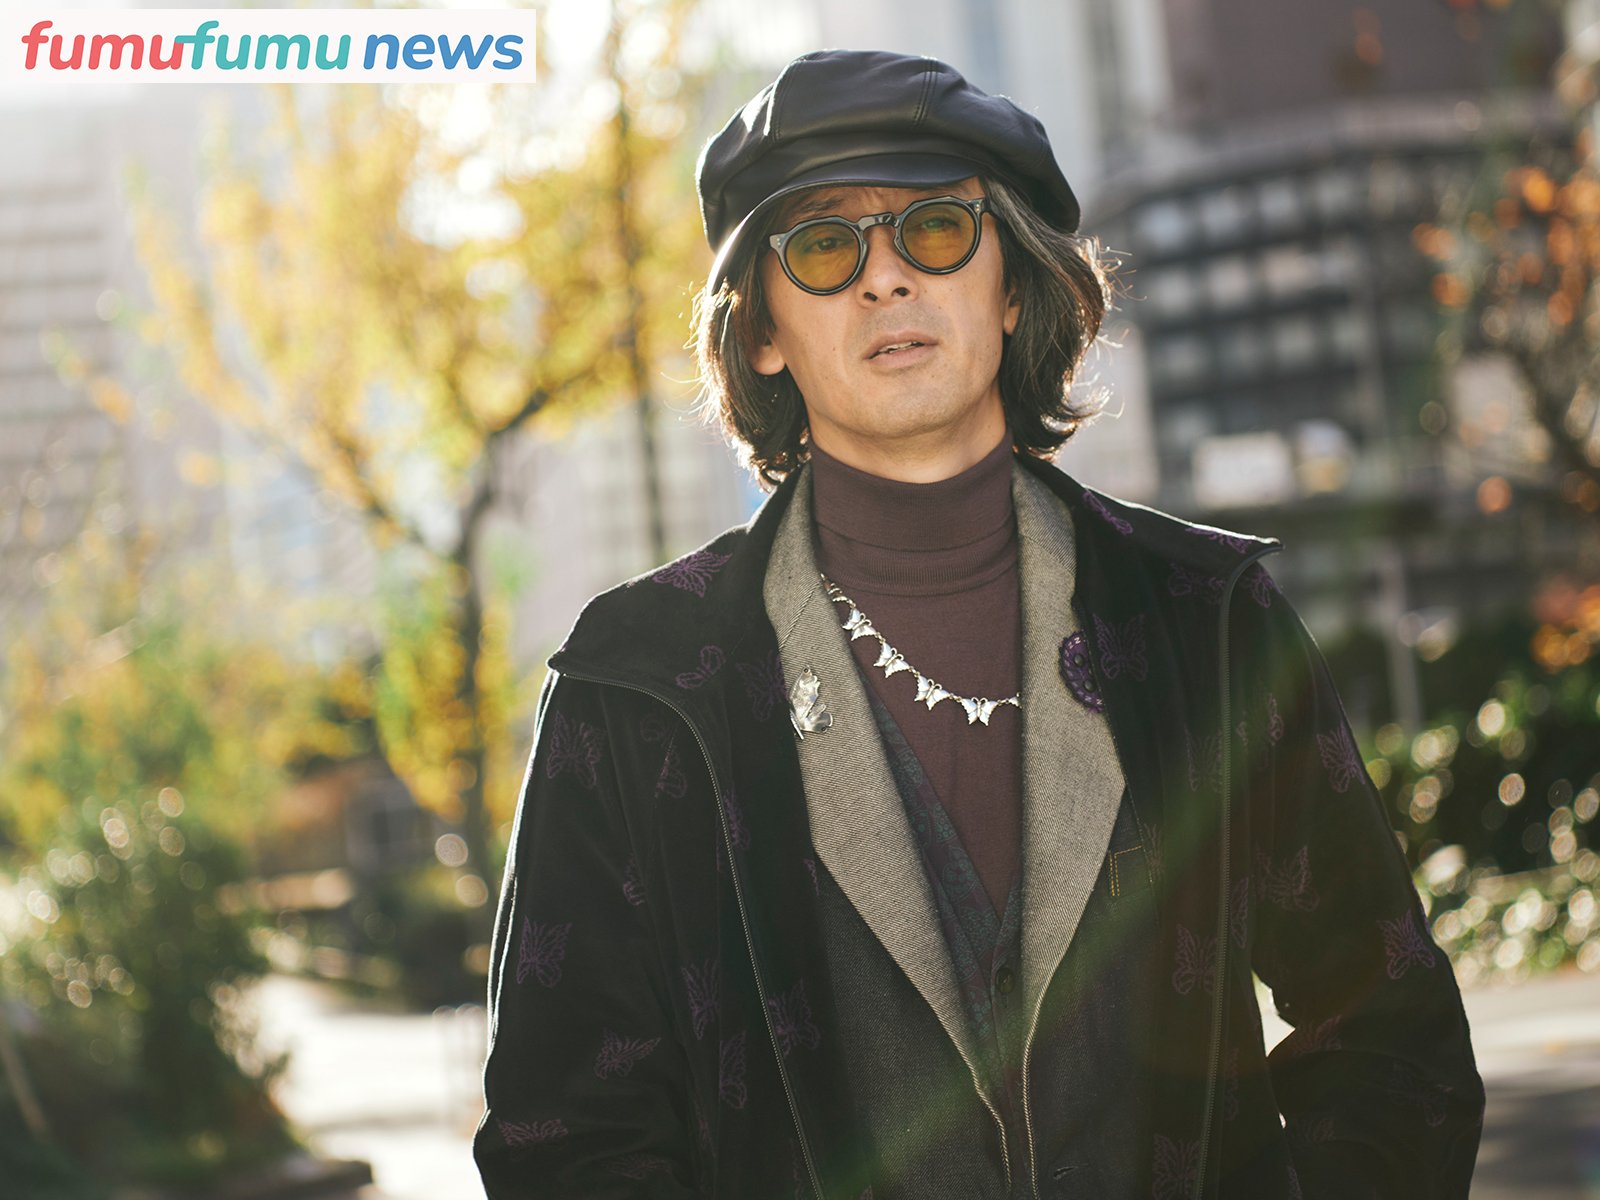 俳優・滝藤賢一、「映画『ひみつのなっちゃん。』は人生のご褒美」多忙な30代以降、それでも走り続けて見えてきたものとは | fumufumu news  -フムフムニュース-